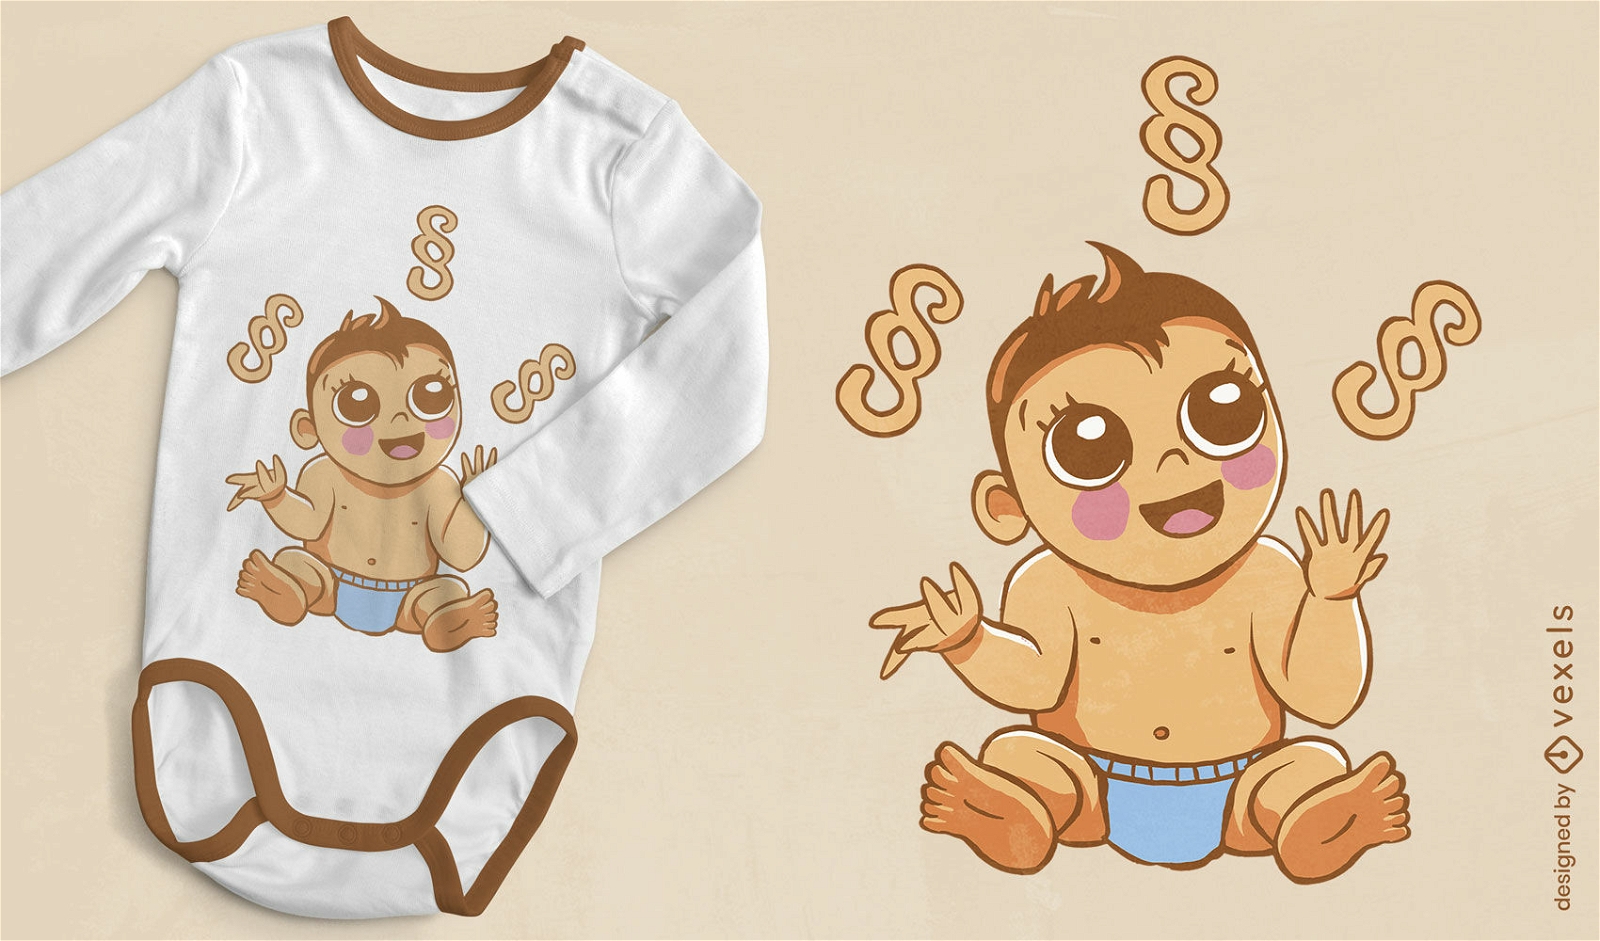 Babyjunge, der mit Absatzzeichen-T-Shirt-Design jongliert